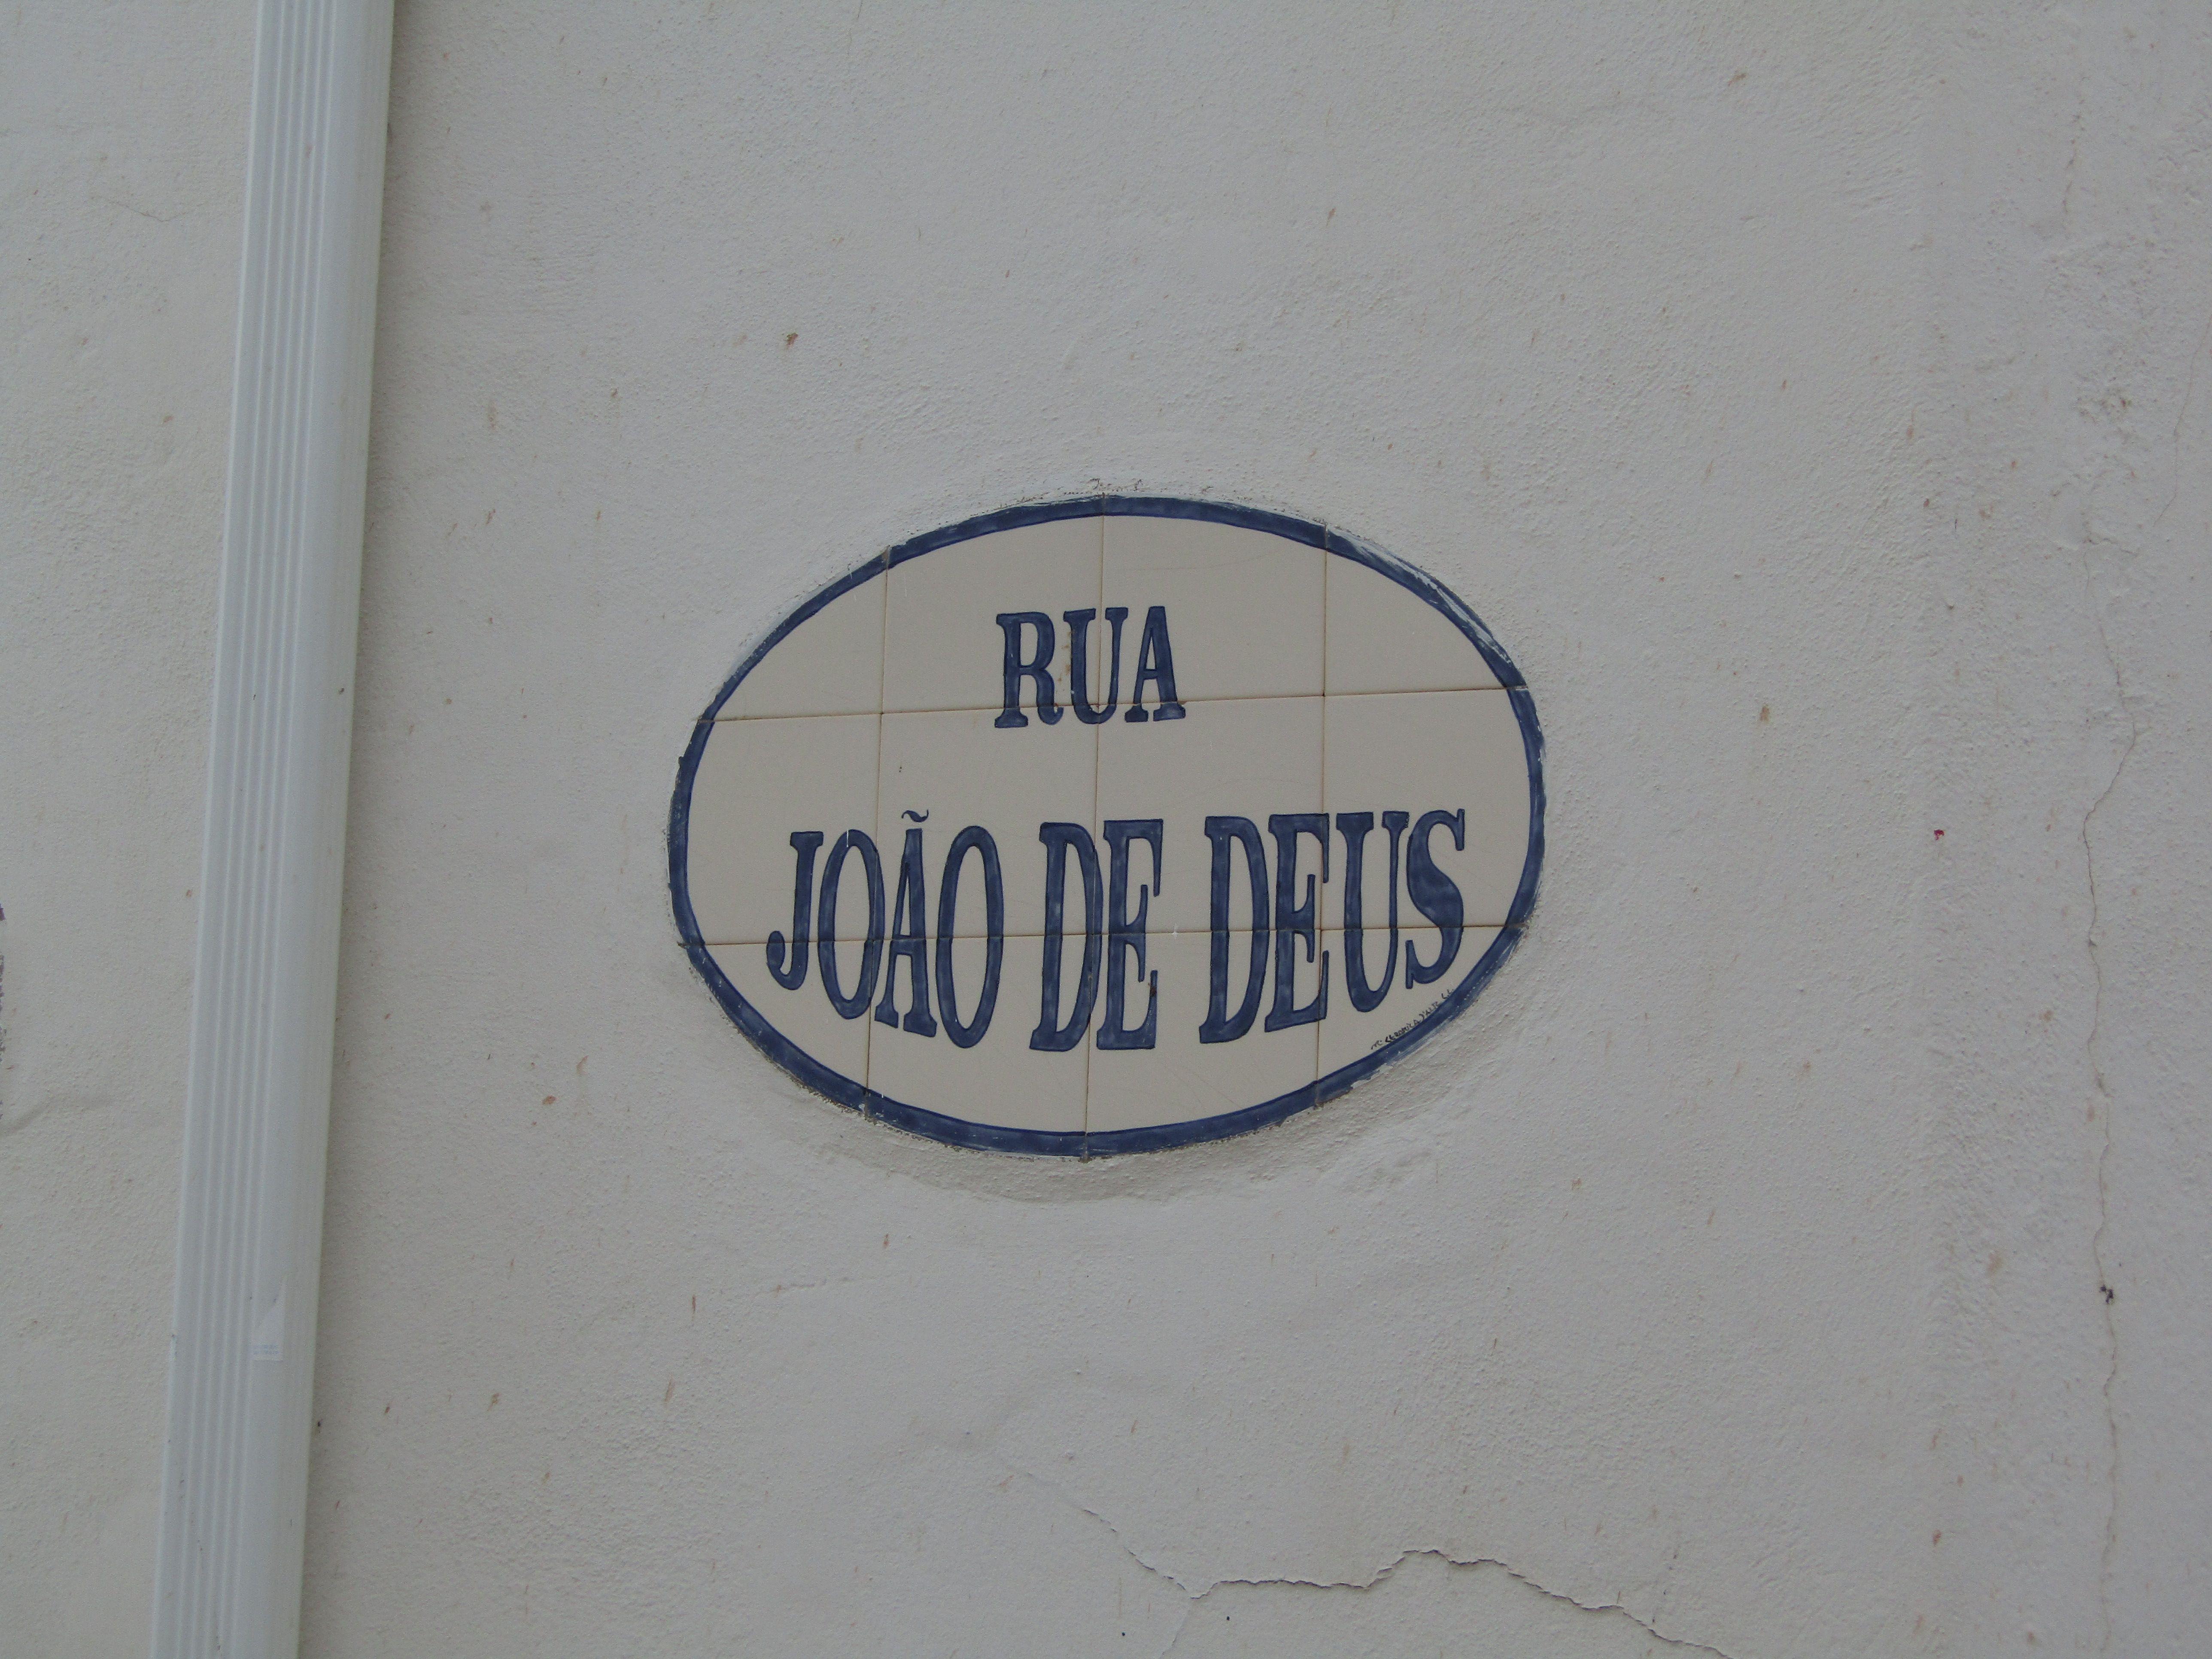 Joao Name Logo - File:2018-02-14 Street name sign, Rua João de Deus, Alte.JPG ...